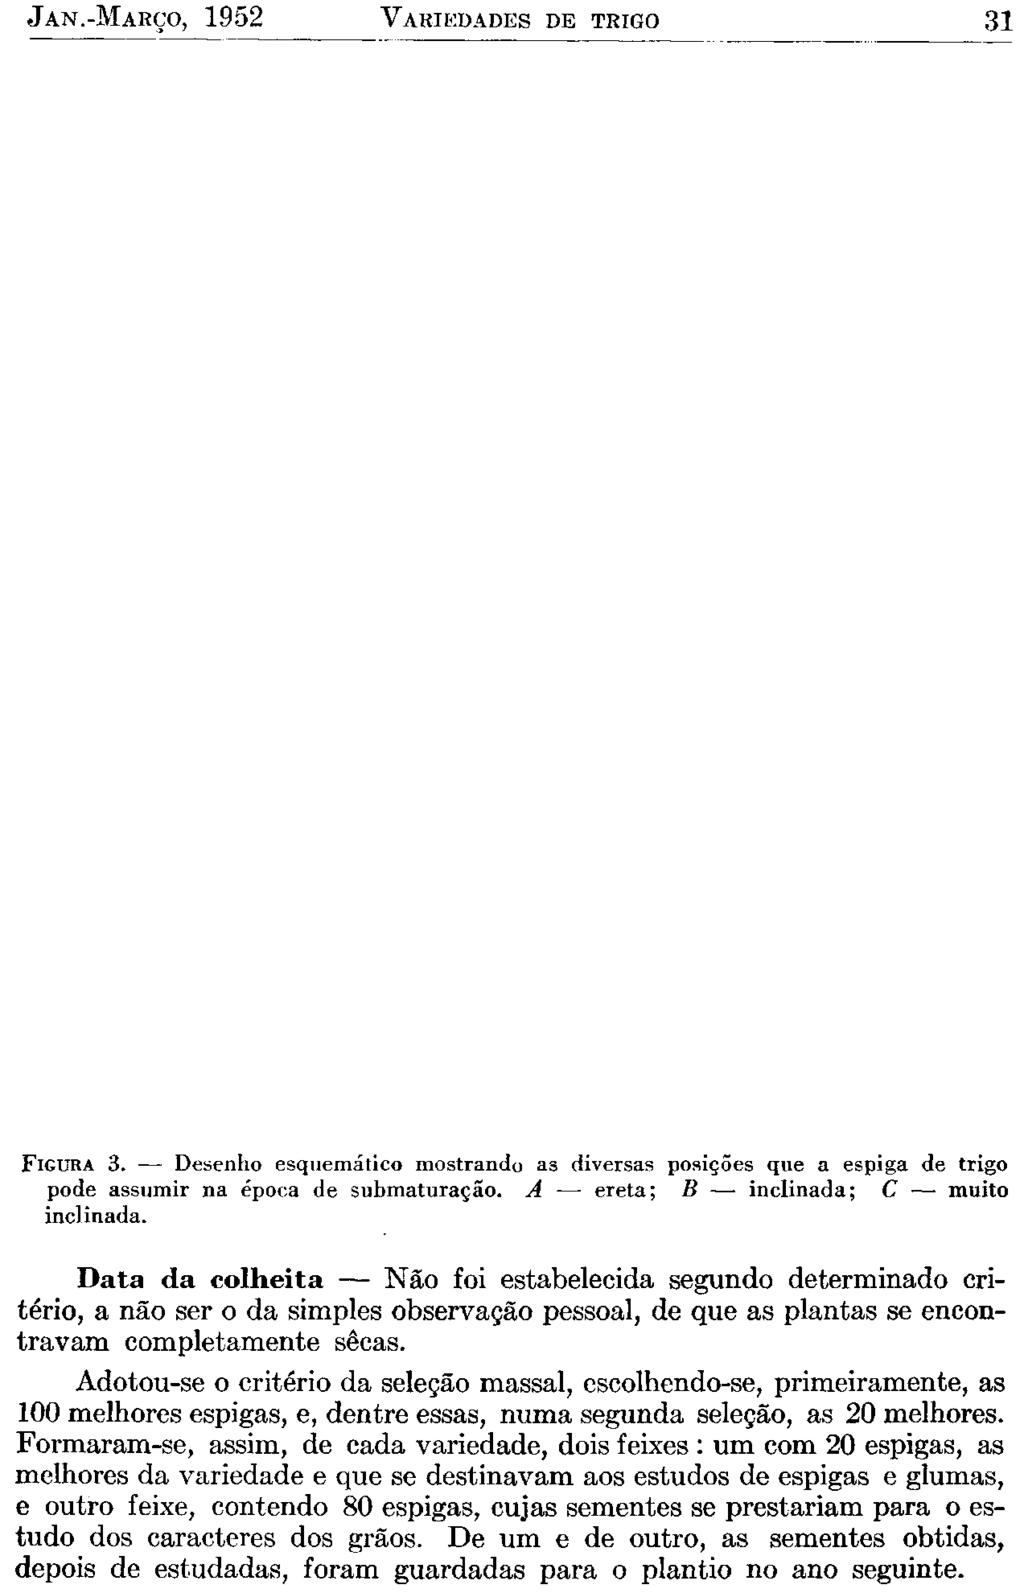 JAN.-MARÇO, 1952 VARIEDADES DE TRIGO 31 FIGURA 3. Desenho esquemático mostrando as diversas posições que a espiga de trigo pode assumir na época de submaturação.